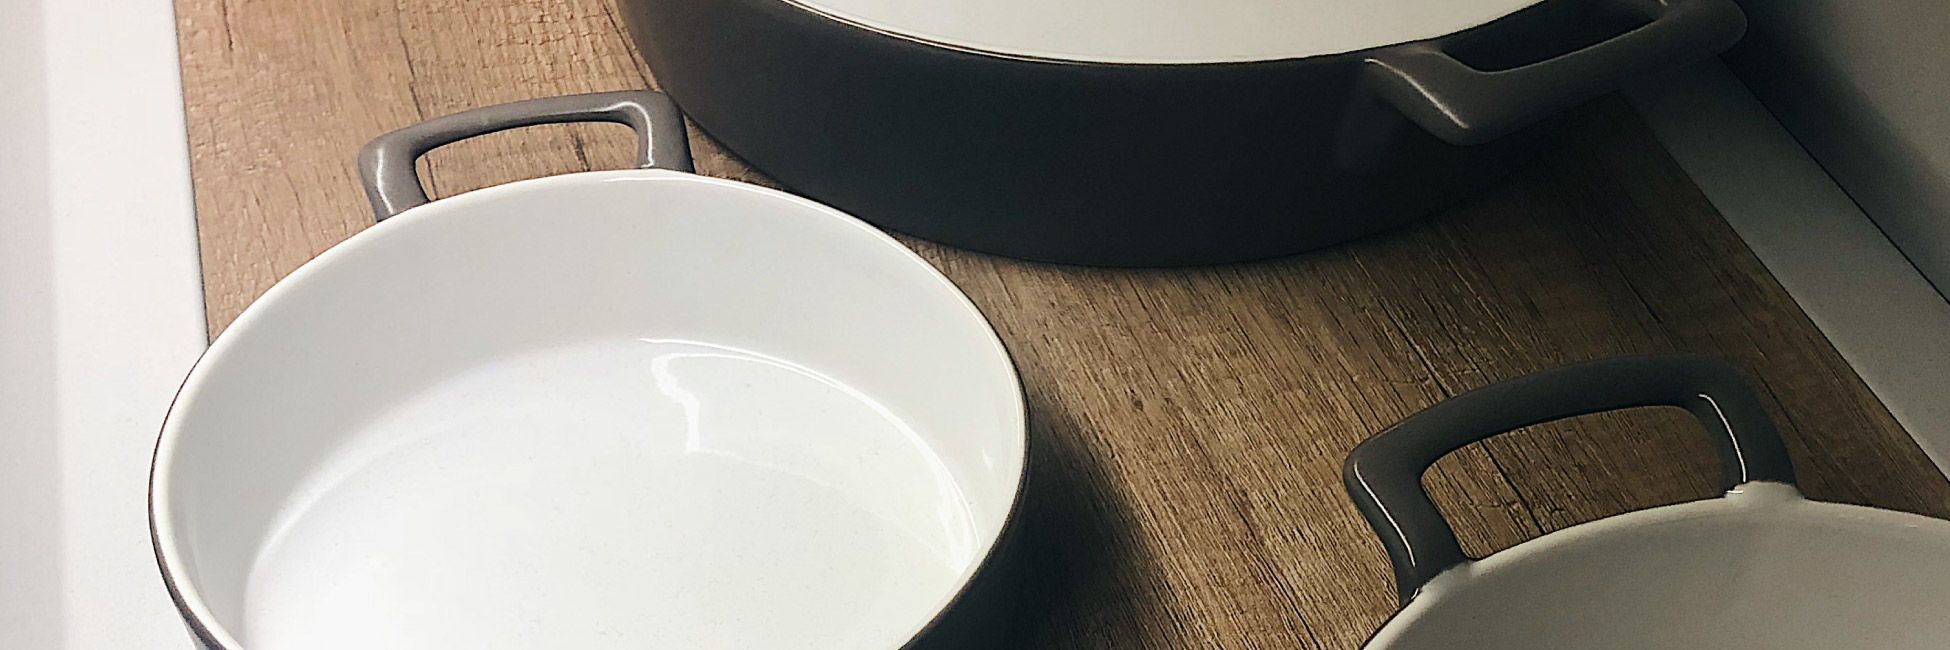 Керамическая посуда: вековые традиции и современный стиль